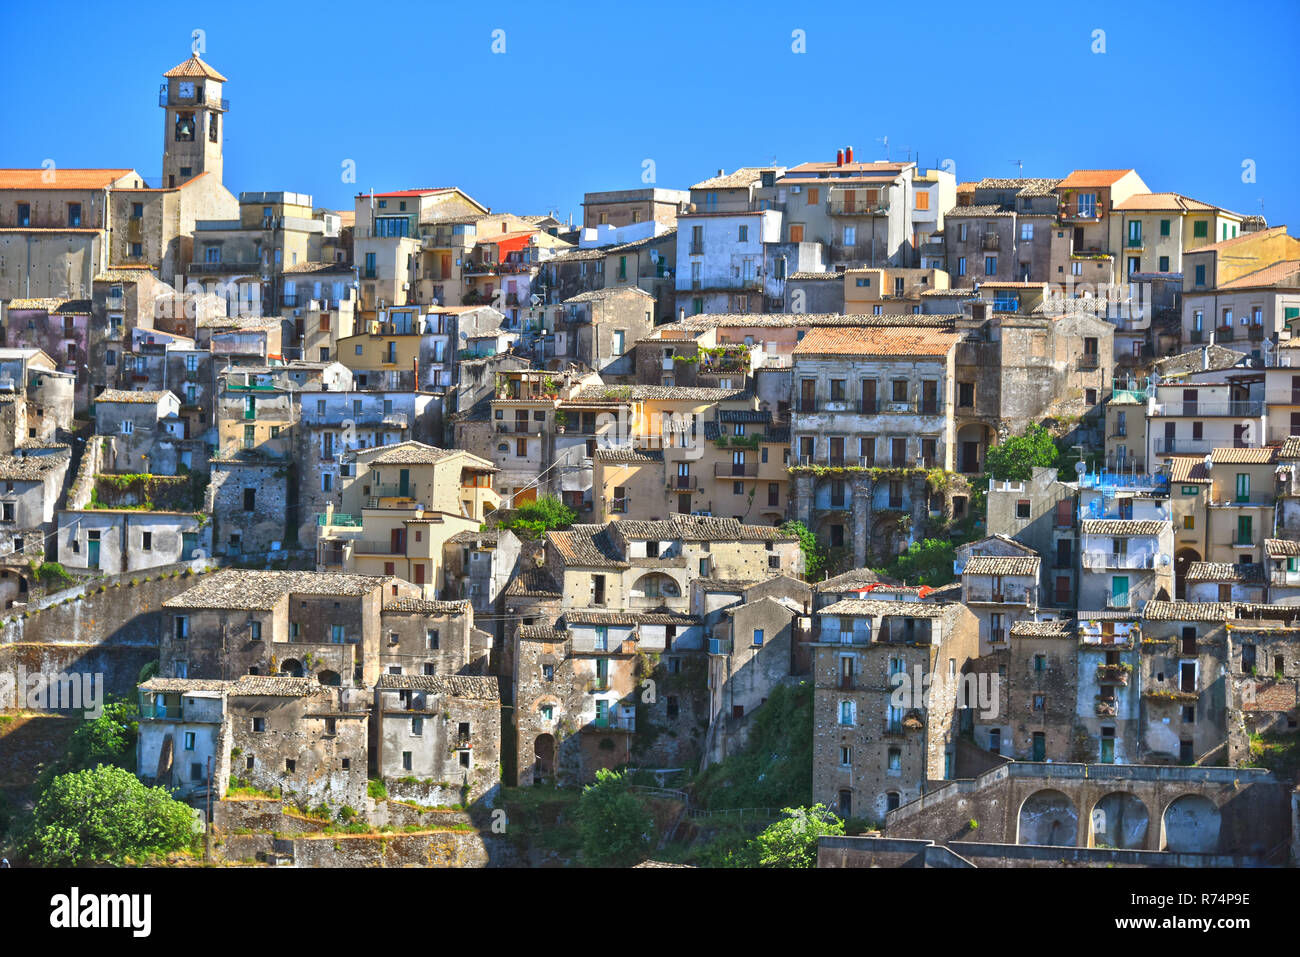 The village of Badolato, Calabria, Italy Stock Photo